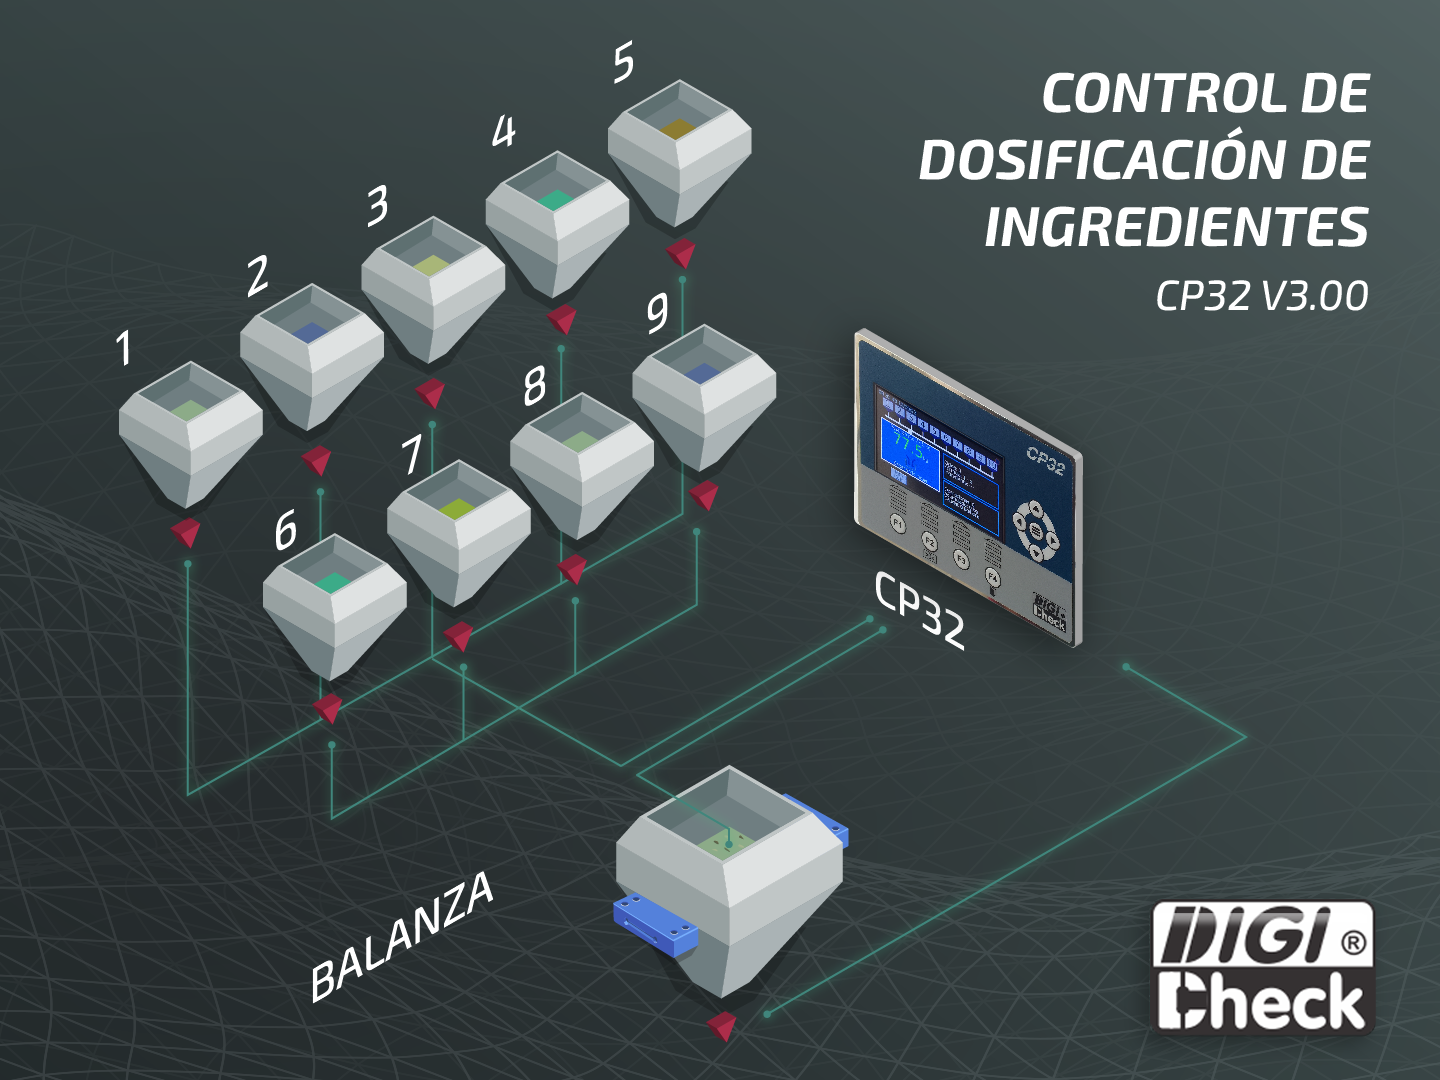 Controlador de dosificación de ingredientes CP32